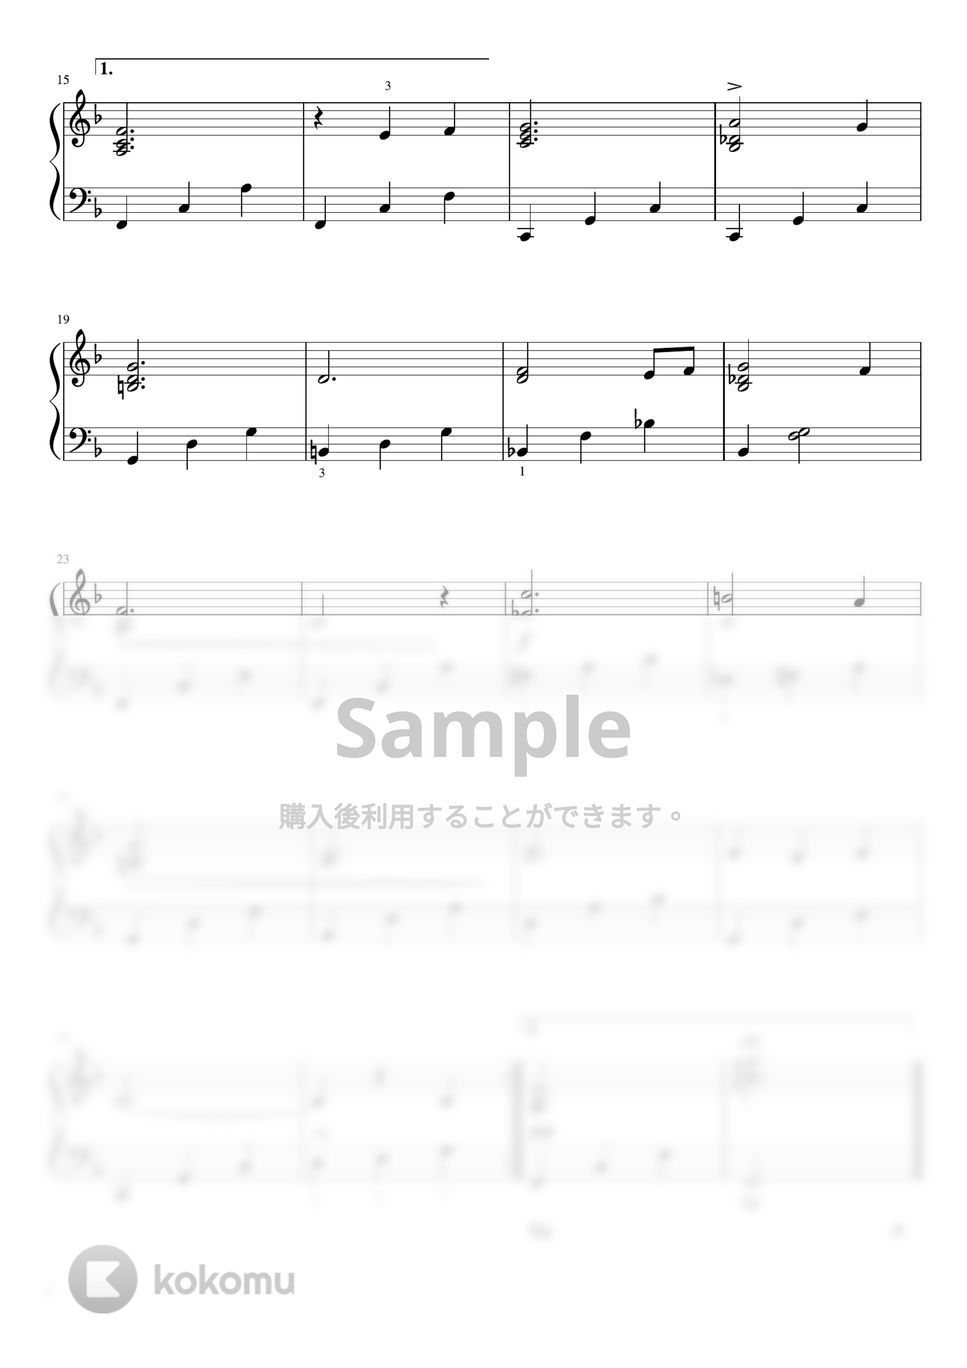 ショパン - ノクターン第2番 (F・ピアノソロ初~中級) by pfkaori